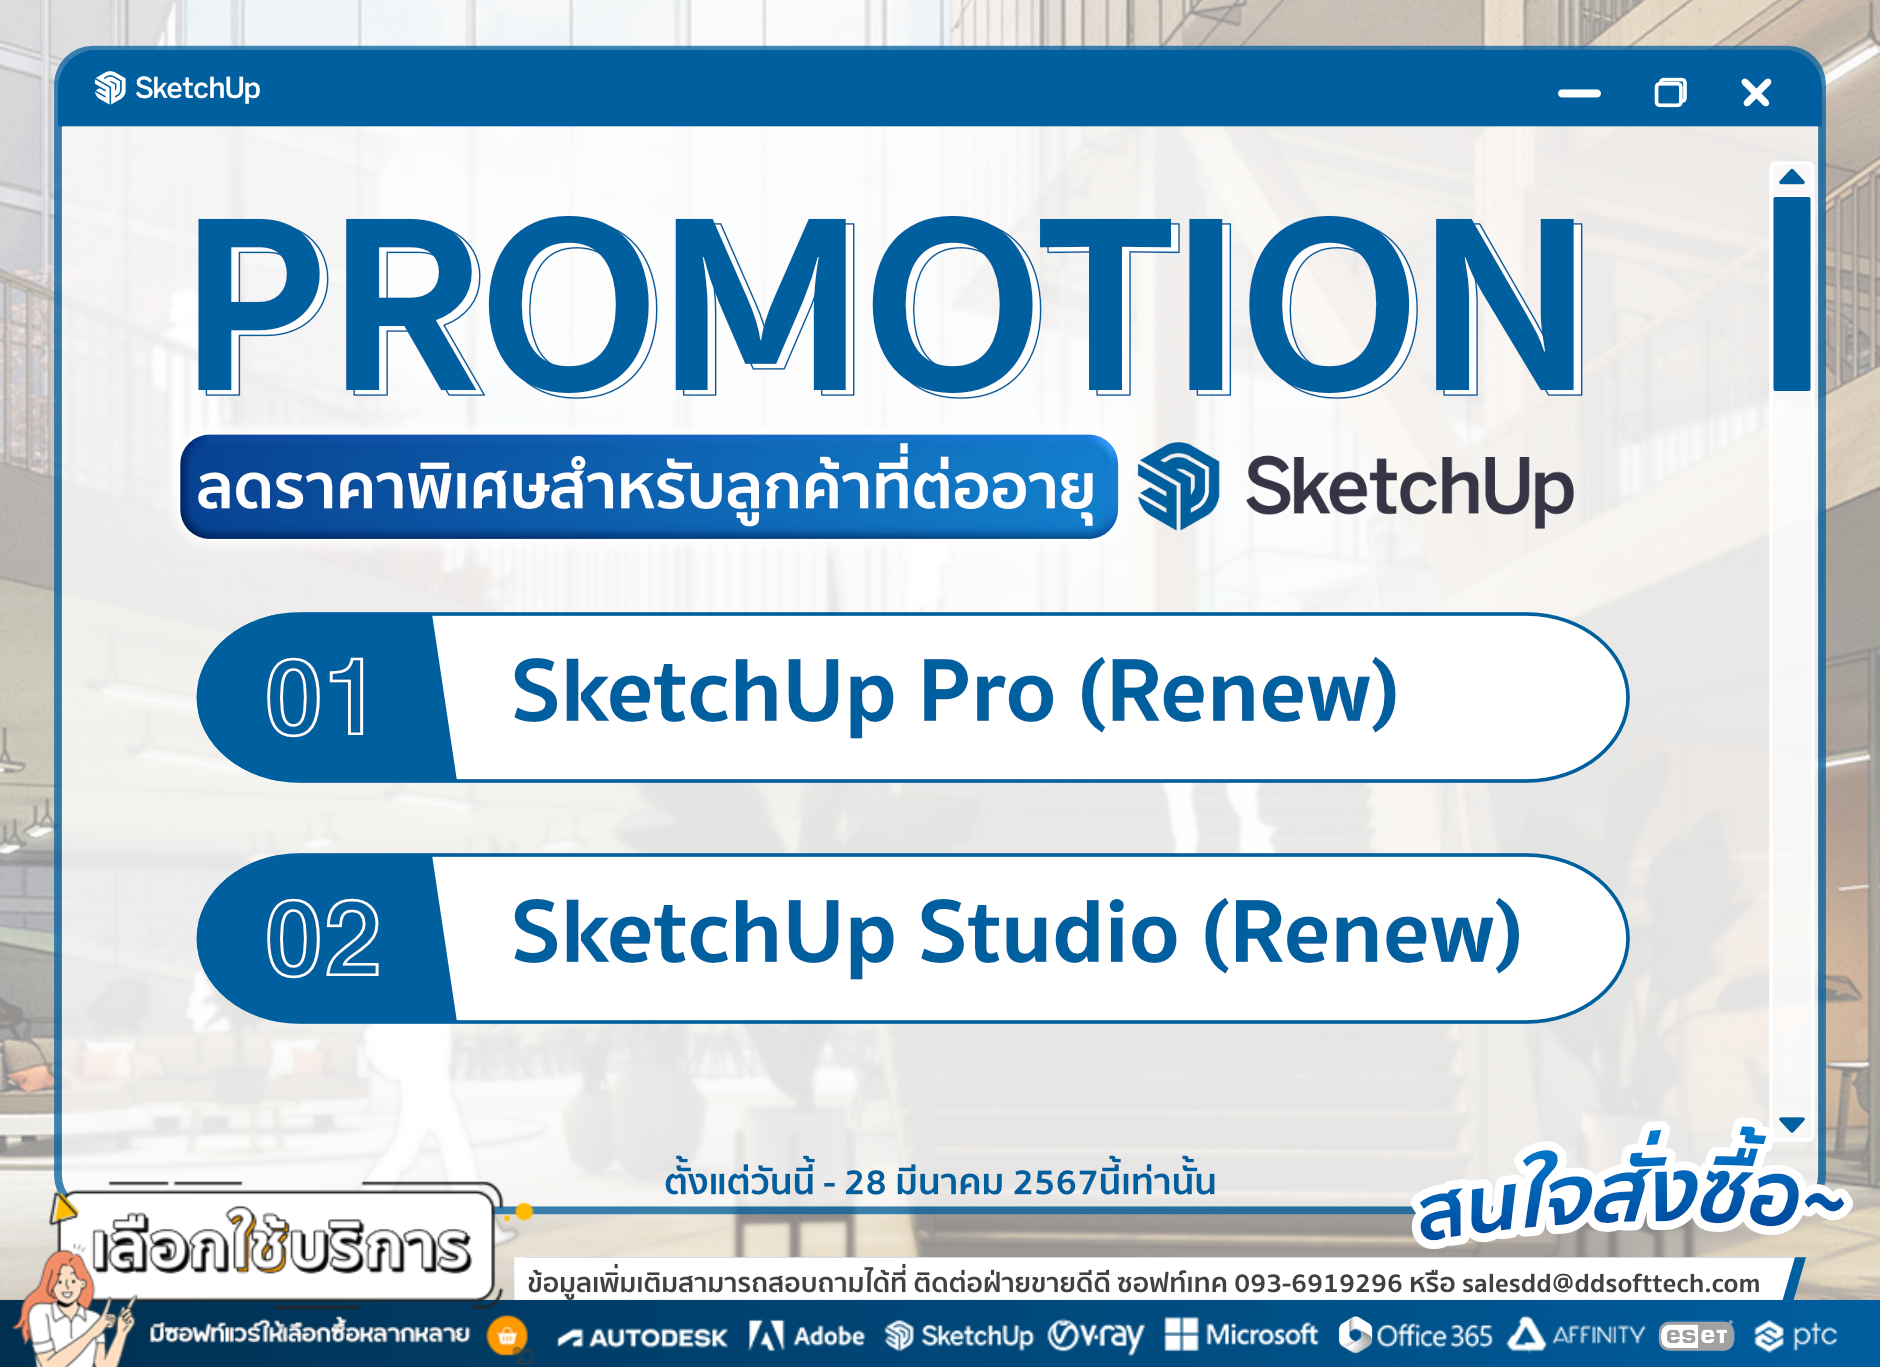 โปรโมชั่นสำหรับลูกค้าที่ต่ออายุโปรแกรม  SketchUp Pro (renew) หรือ SketchUp Studio (renew) รับส่วนลดสุดพิเศษทันที